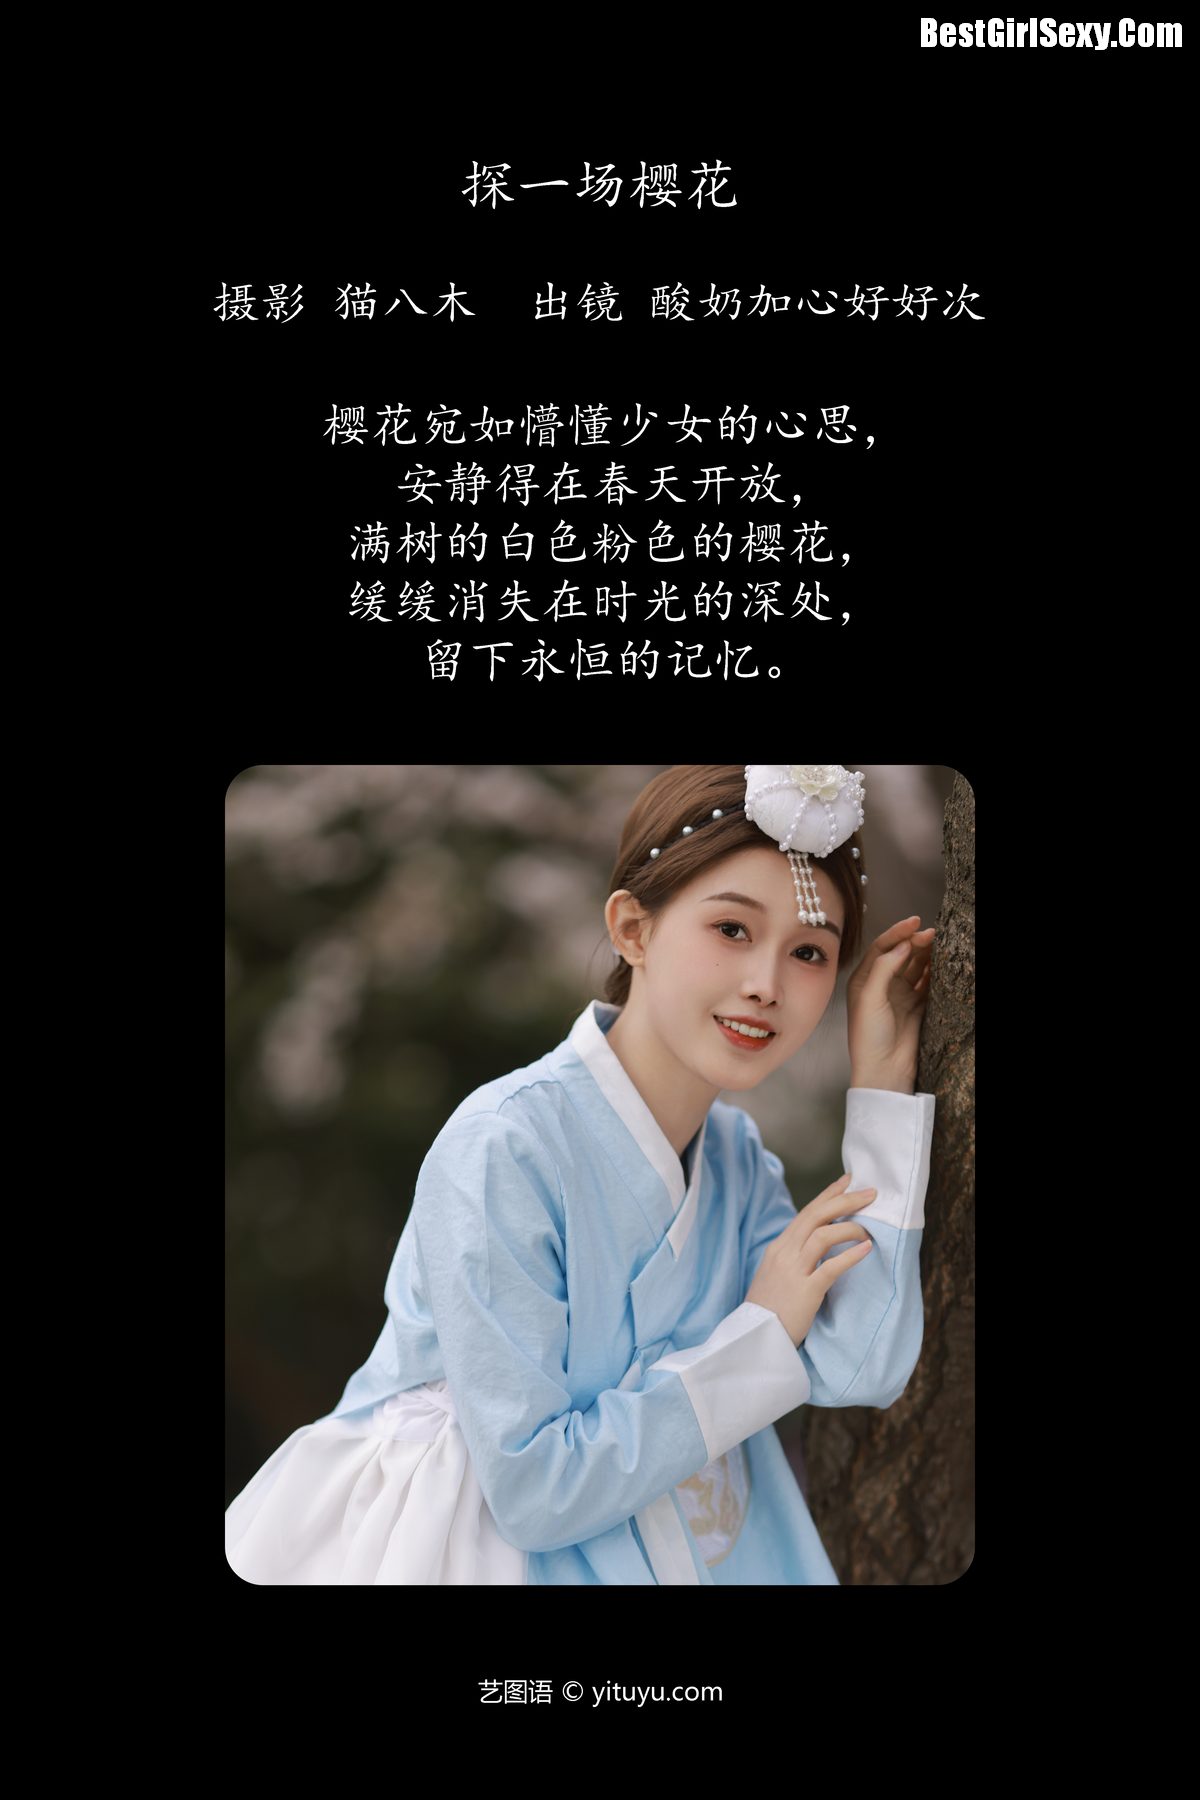 YiTuYu艺图语 Vol 4104 Suan Nai Jia Xin Hao hao Ci 0002 3024234807.jpg